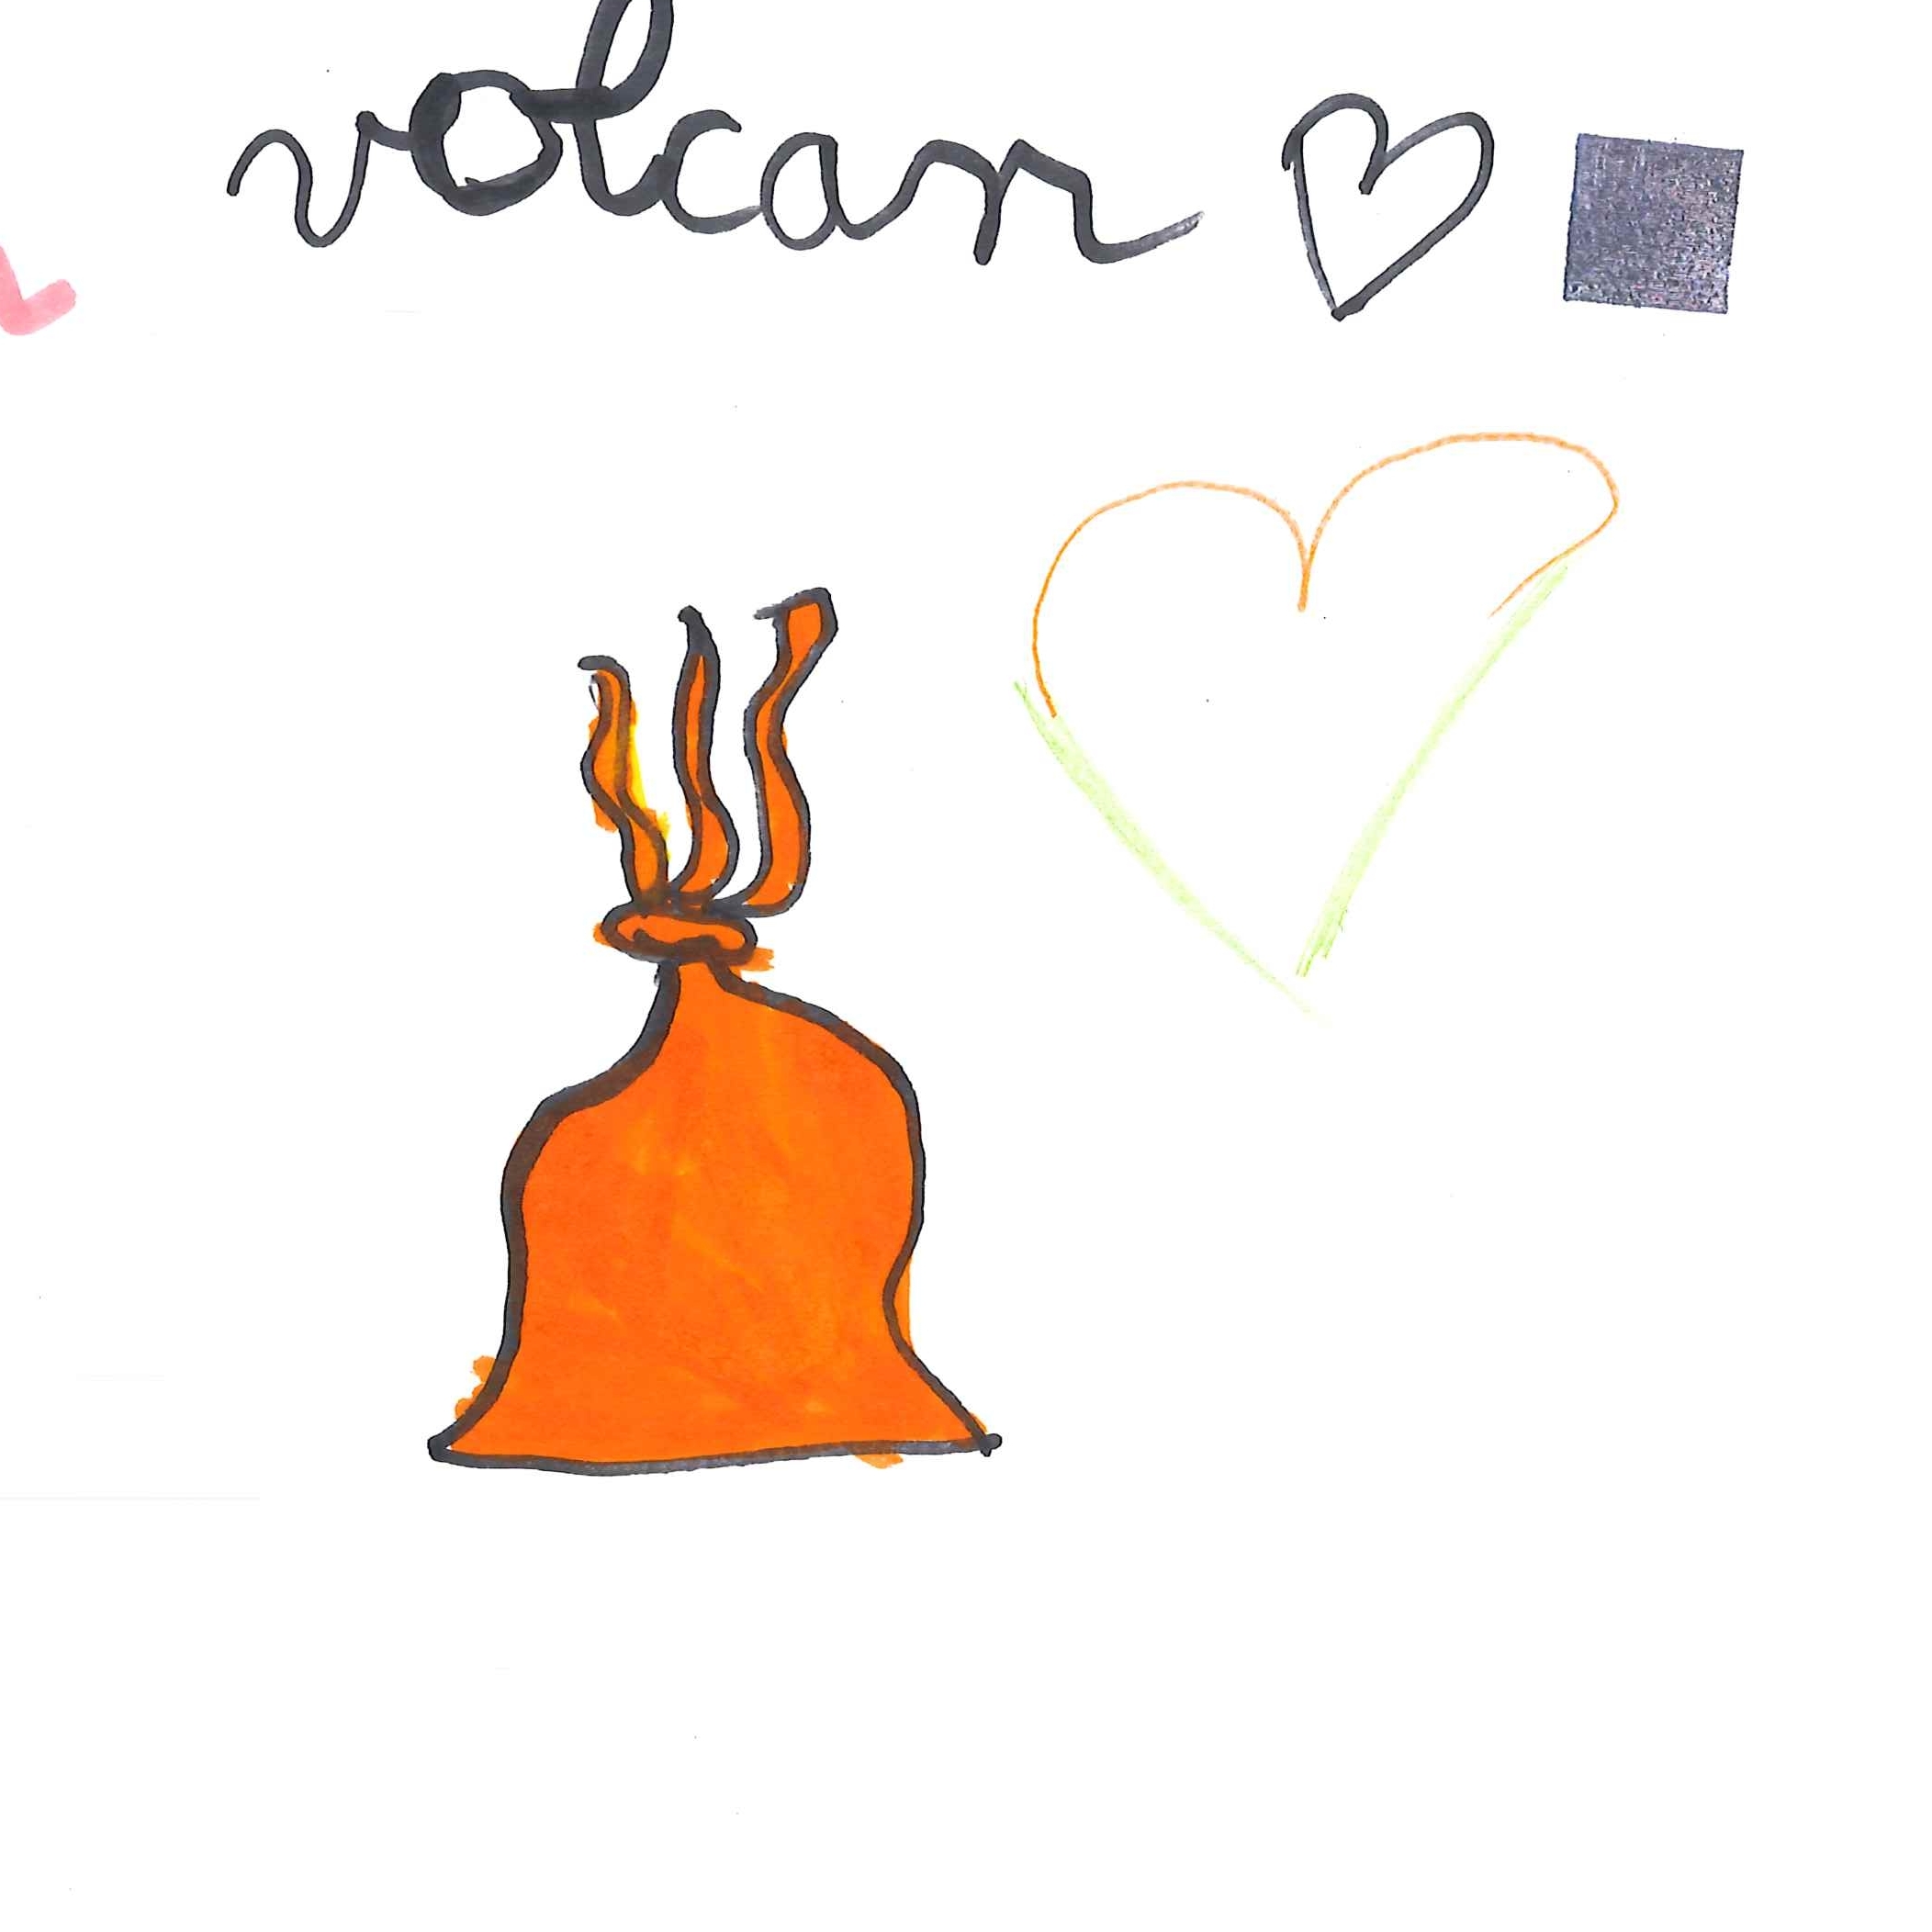 Dessin de Miryam (6 ans). Mot: VolcanTechnique: Feutres.